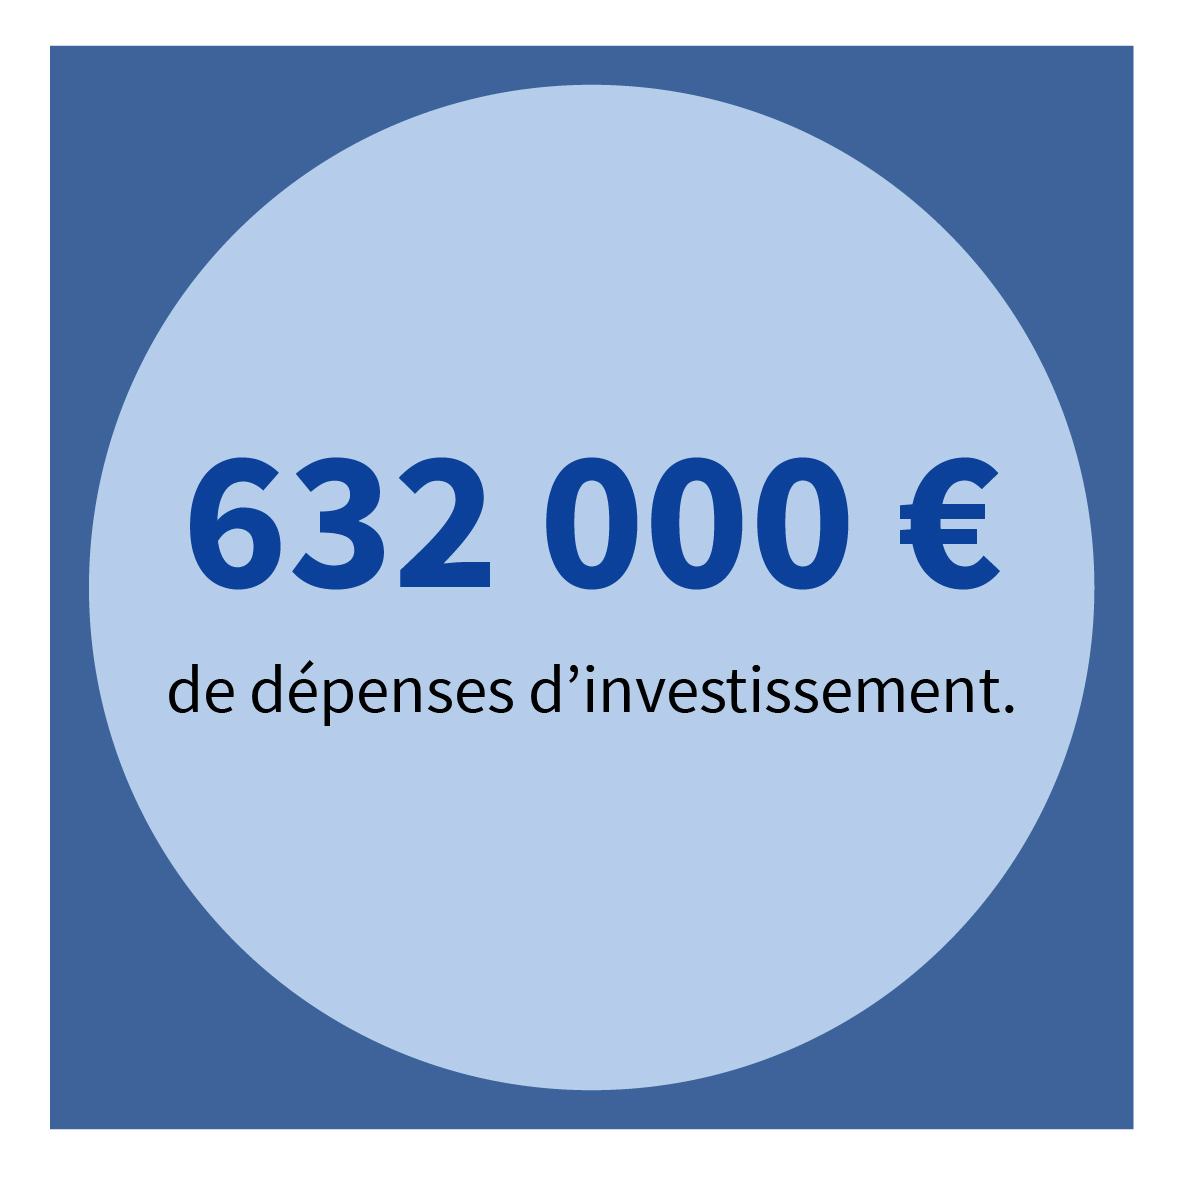 632 000 € de dépenses d’investissement.